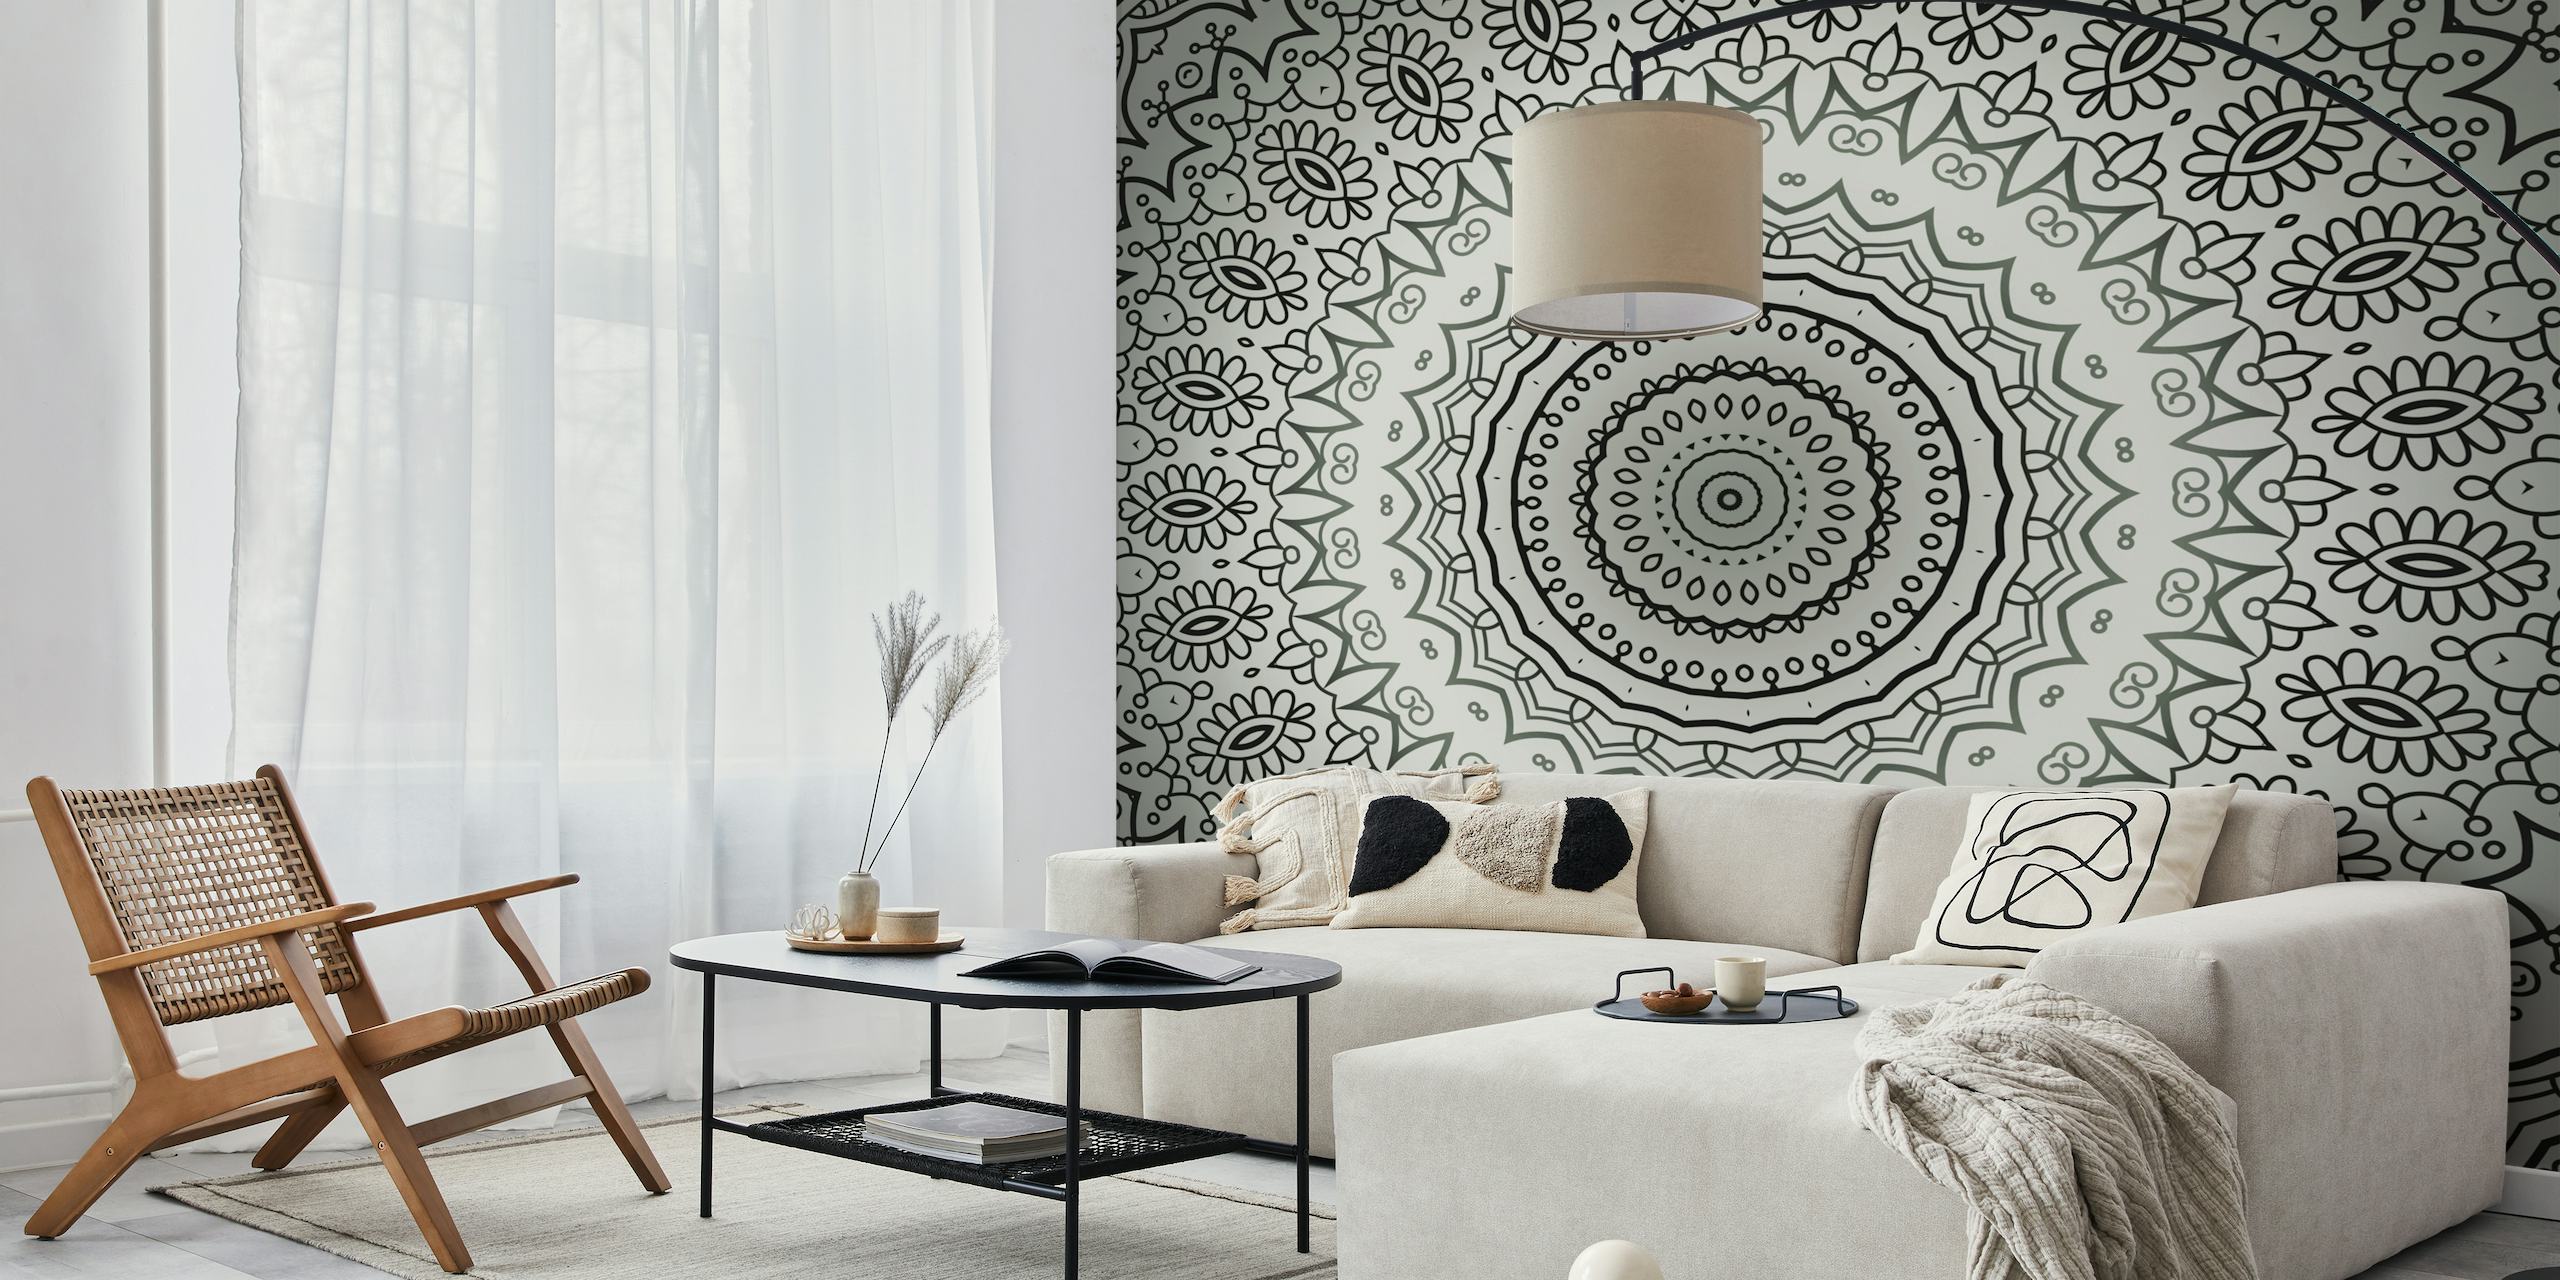 Peinture murale élégante de mandala en niveaux de gris avec des motifs complexes